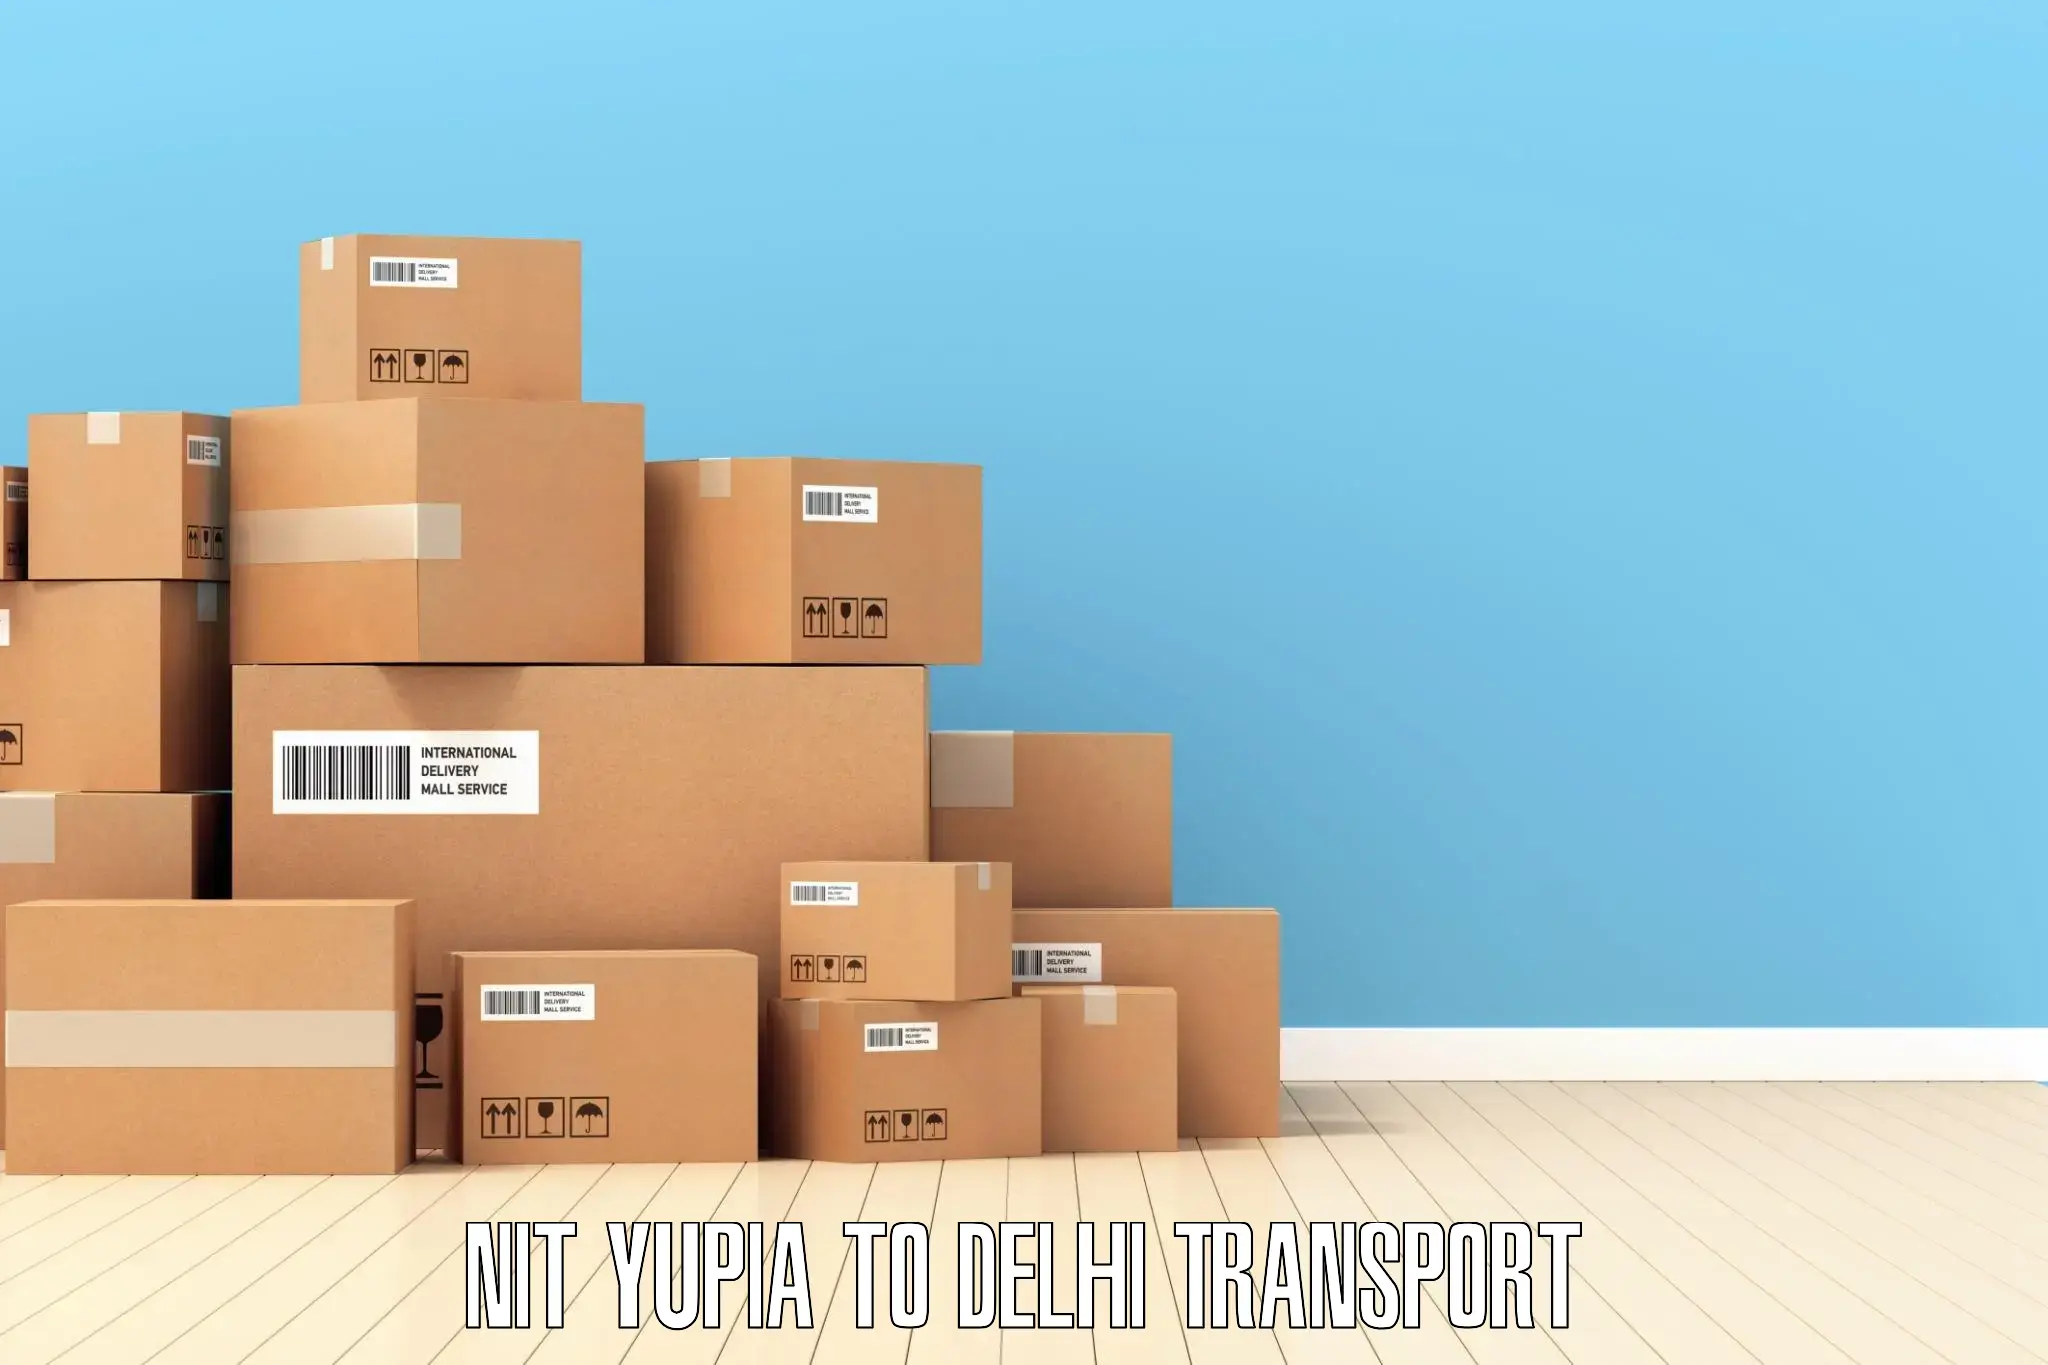 Delivery service NIT Yupia to NIT Delhi